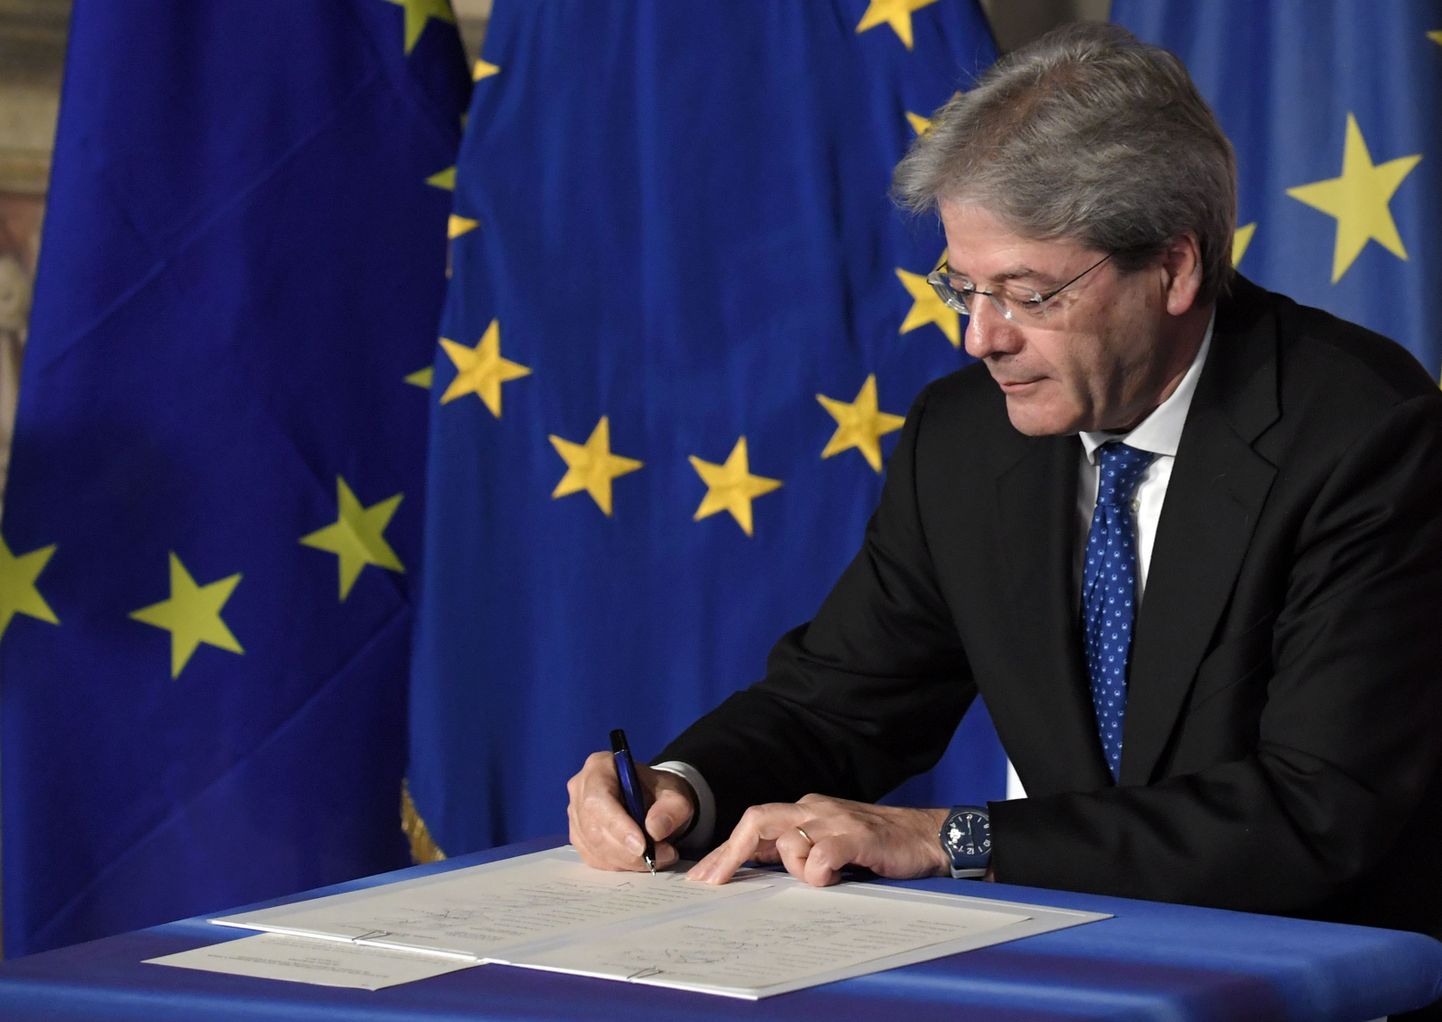 Itaalia peaminister Paolo Gentiloni Rooma deklaratsiooni allkirjastamas.